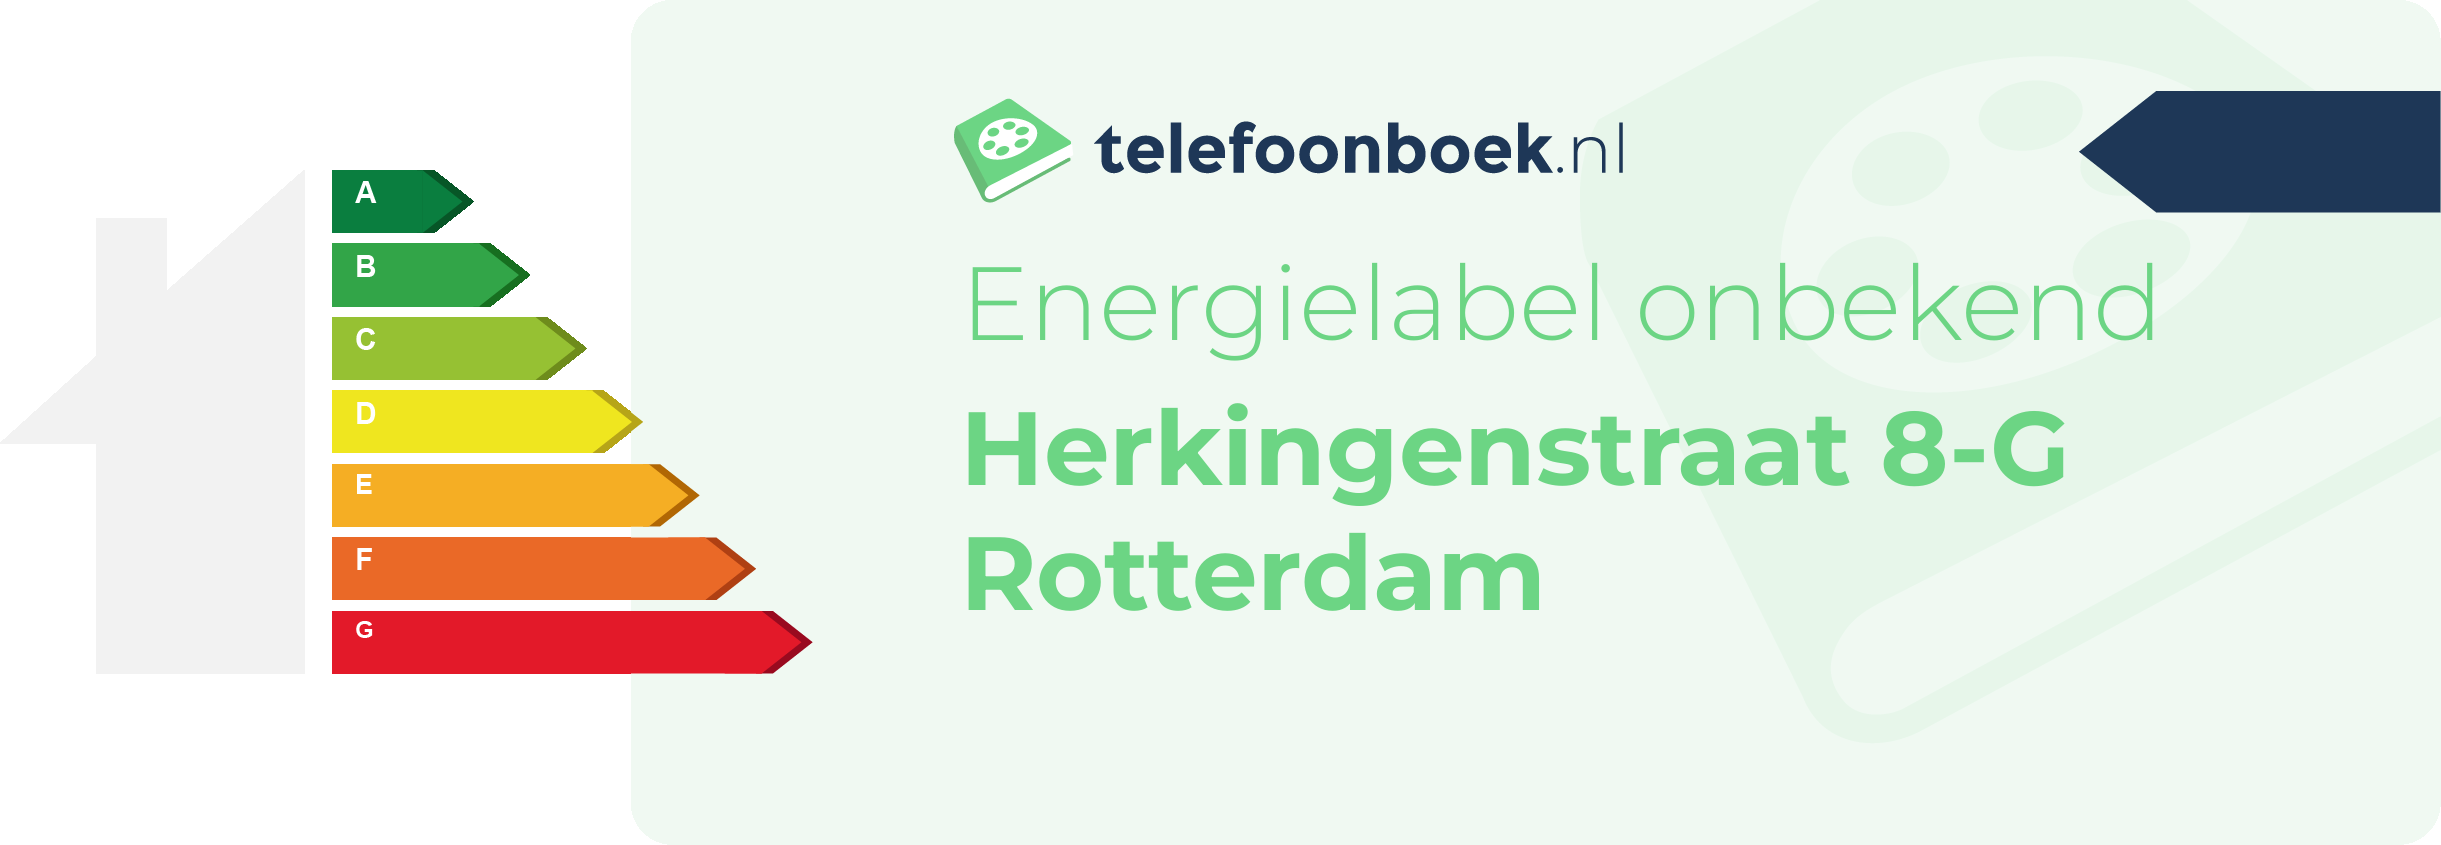 Energielabel Herkingenstraat 8-G Rotterdam